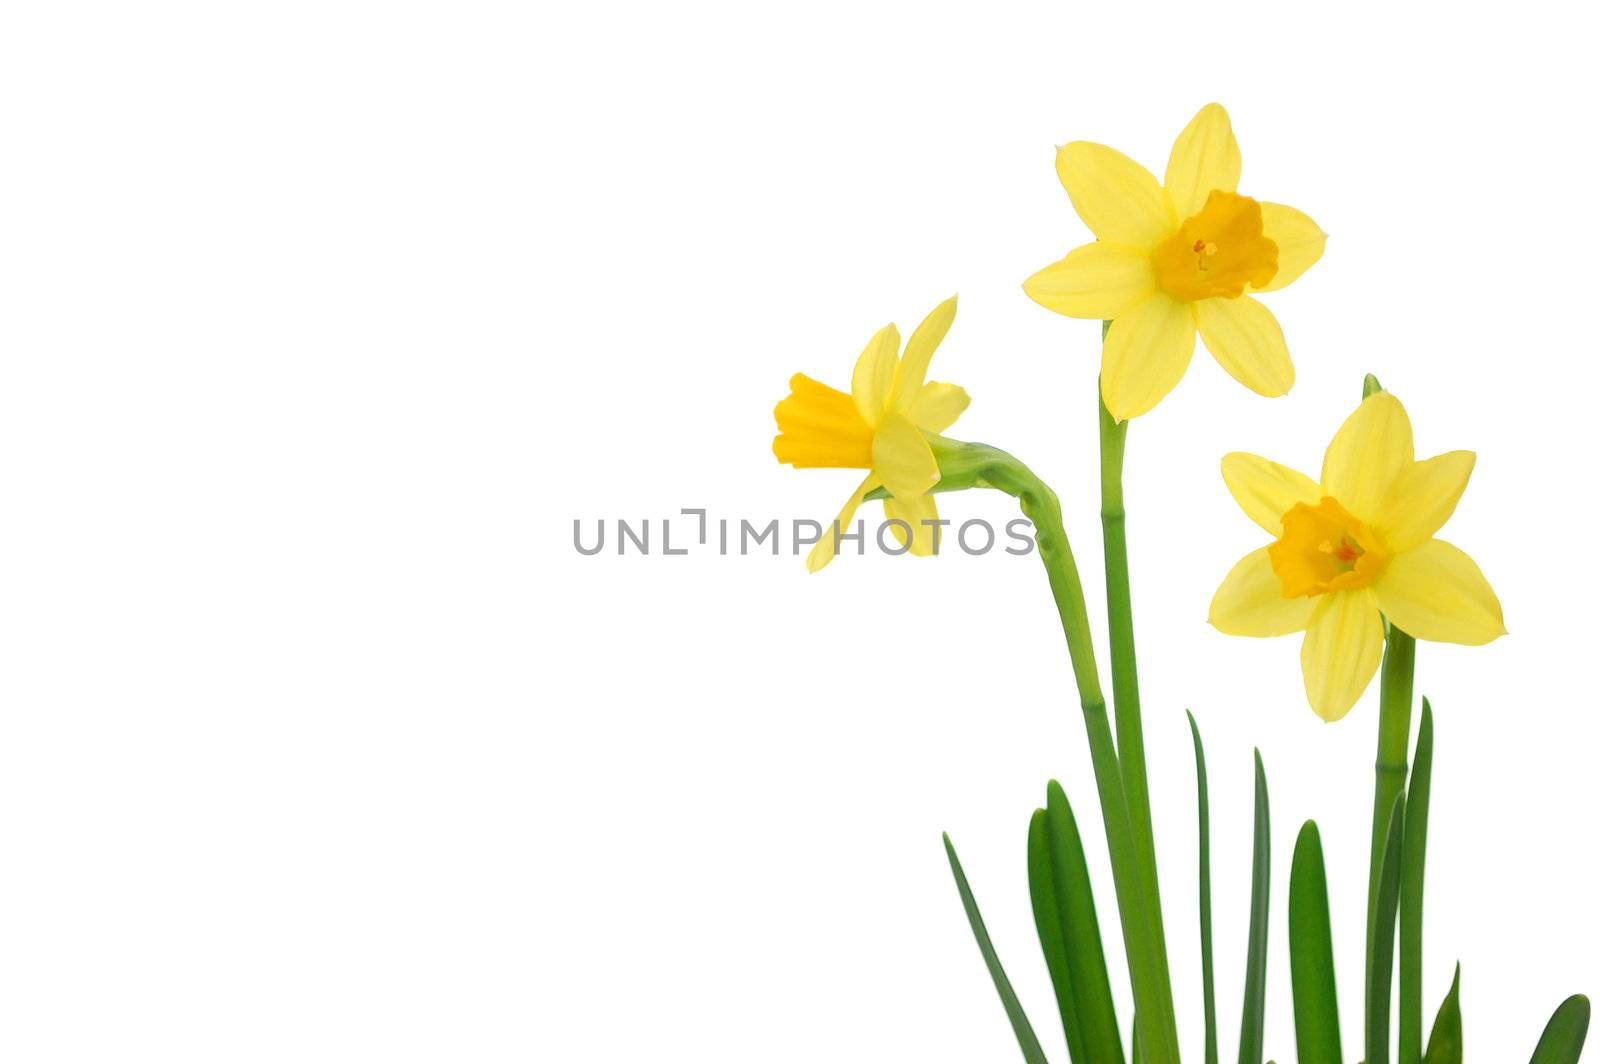 Daffodils by unikpix